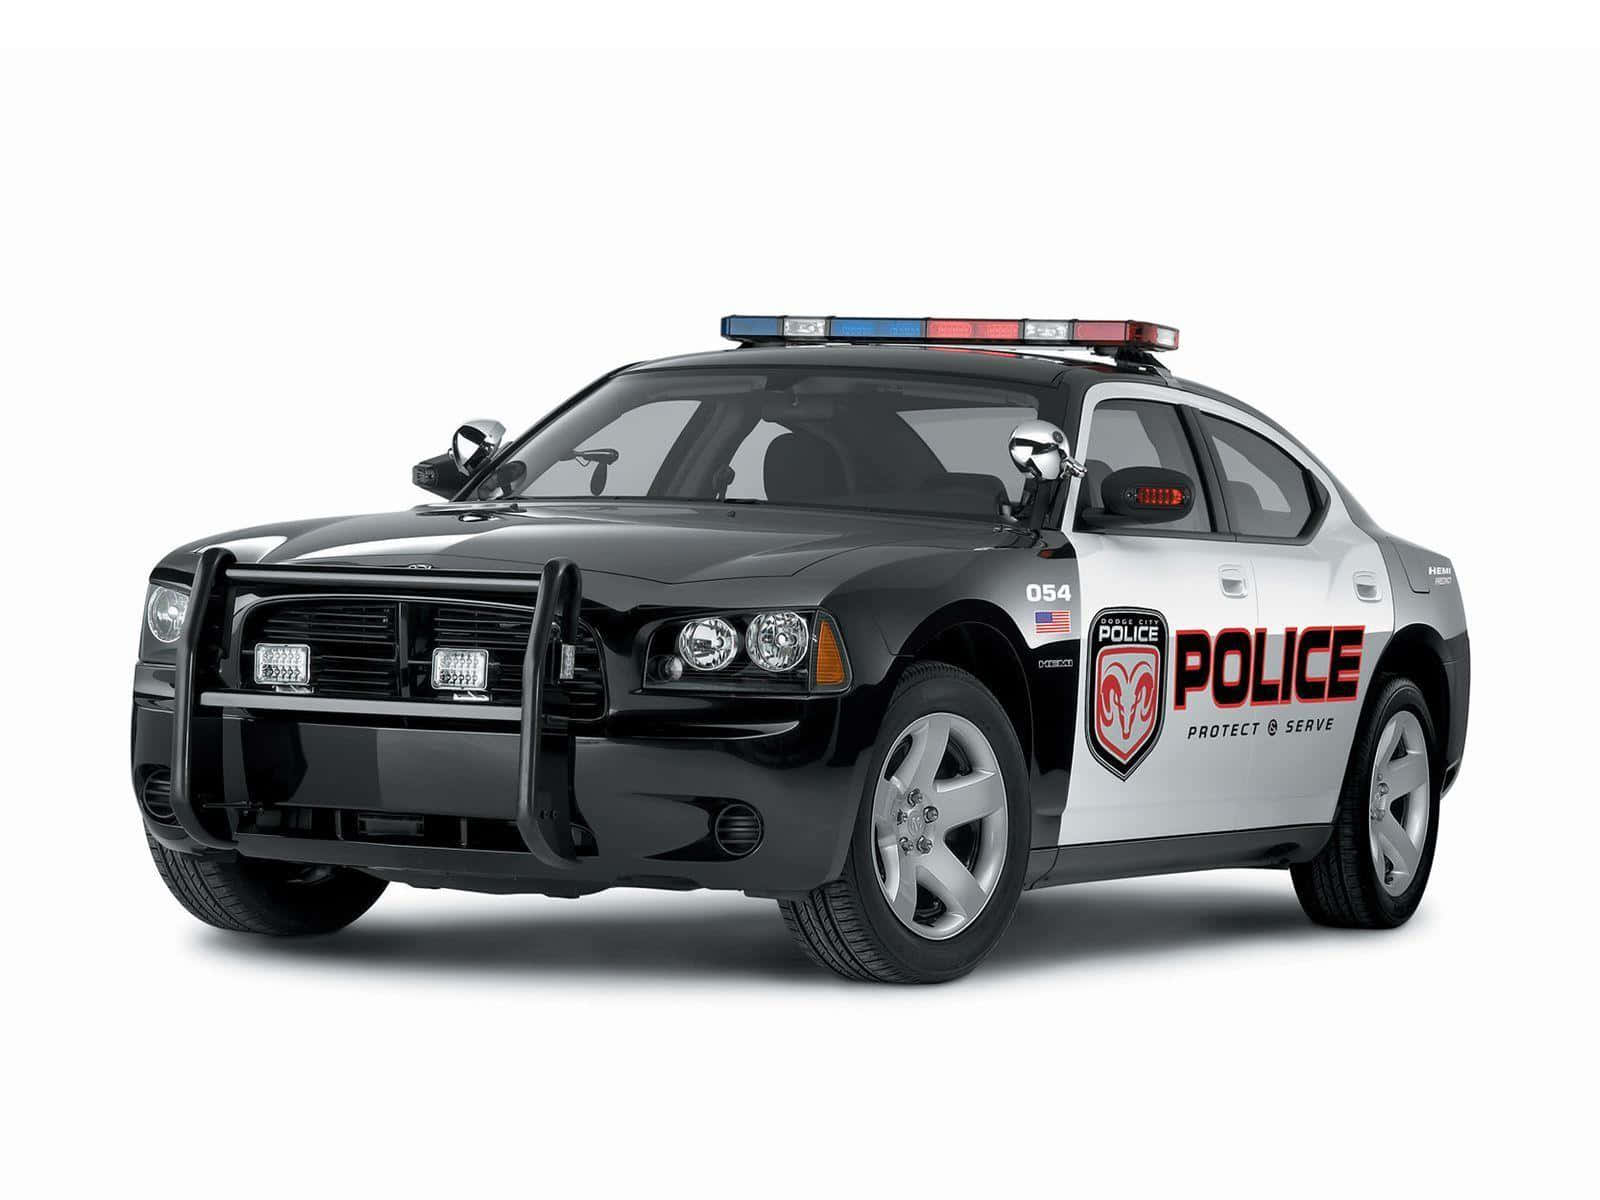 Modern Police Car on Patrol